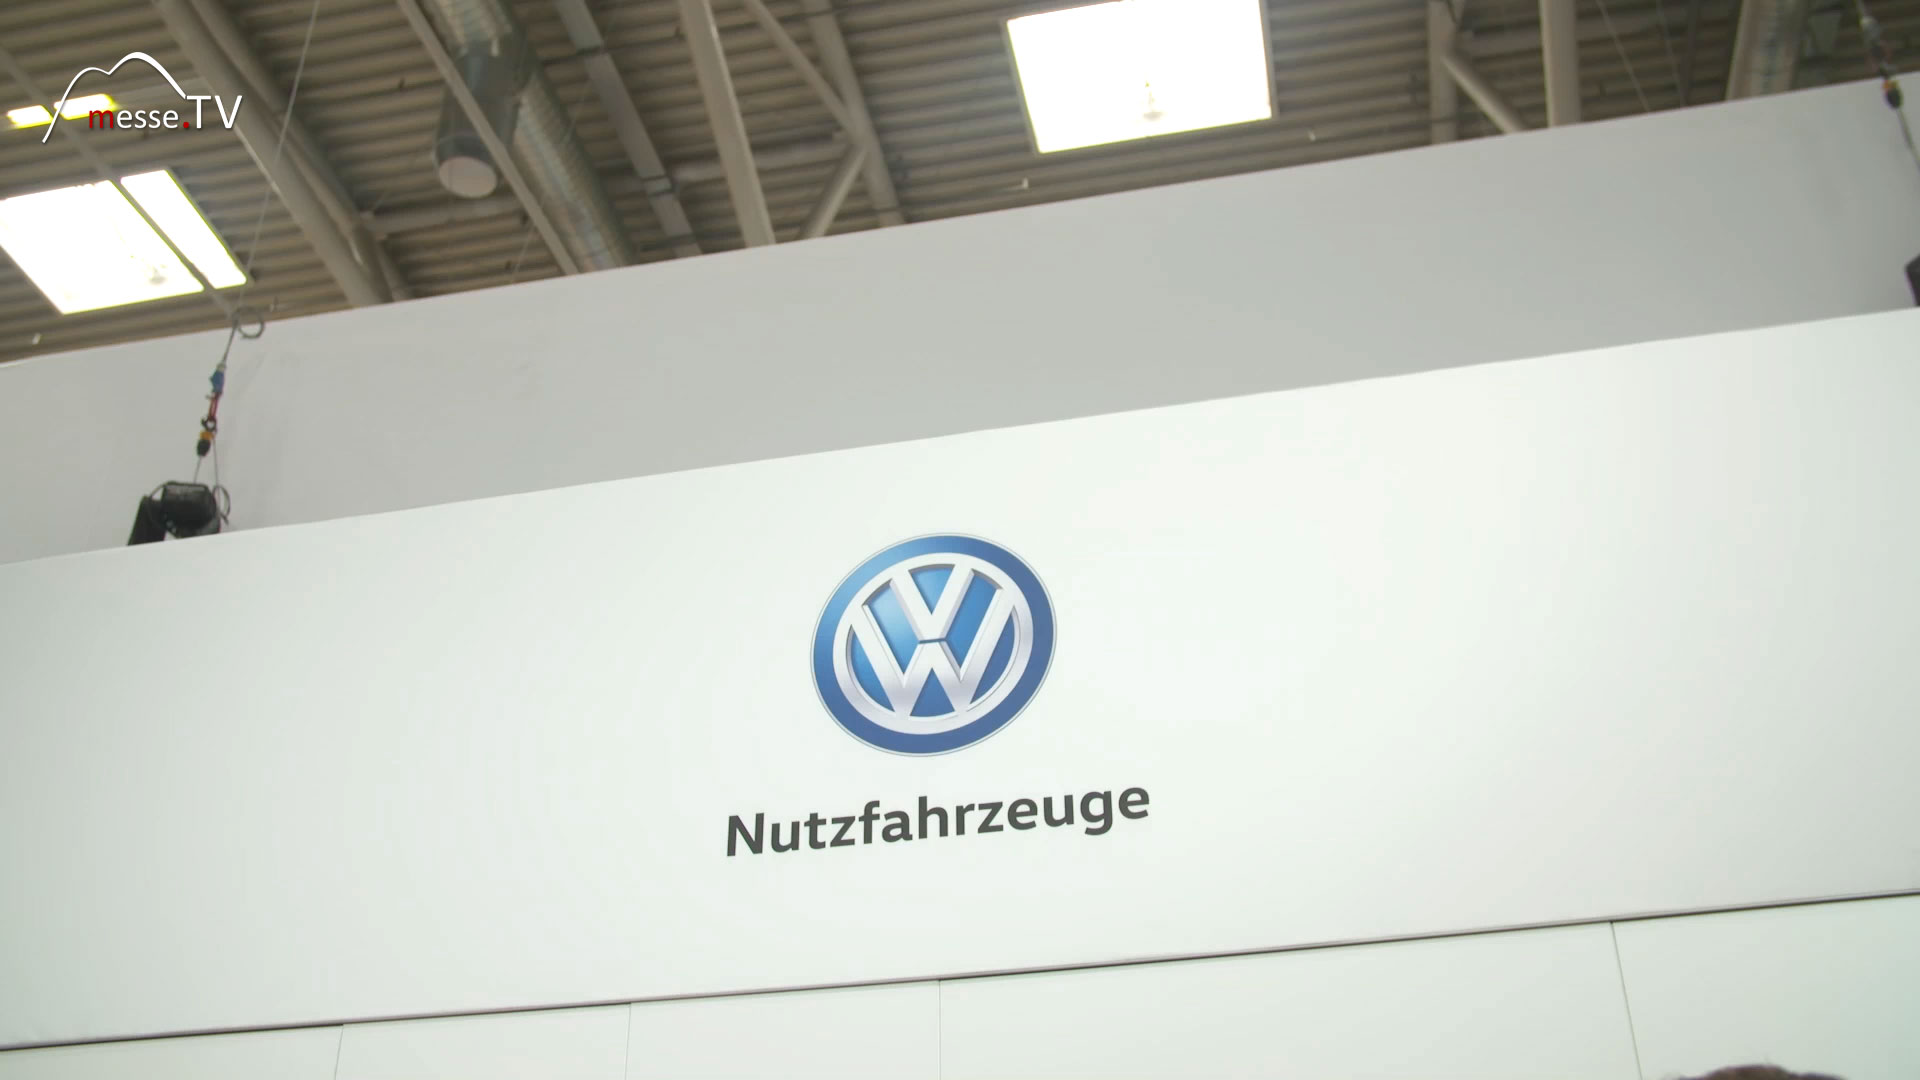 VW Nutzfahrzeuge transport logistic 2019 Messe Muenchen